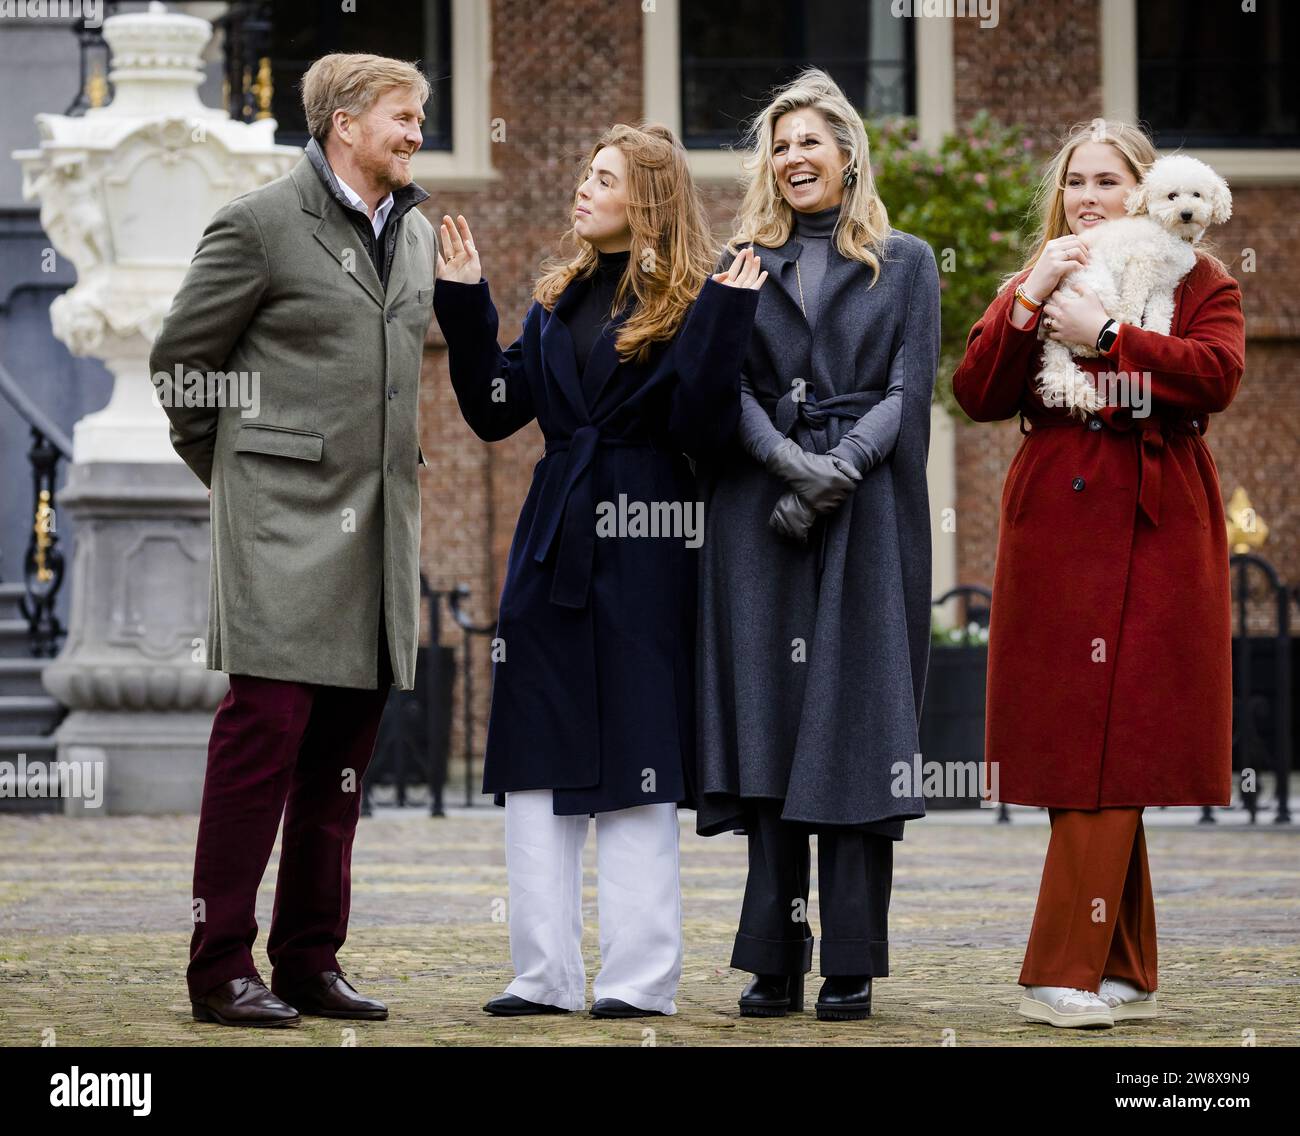 DEN HAAG - König Willem-Alexander, Prinzessin Alexia, Königin Maxima und Prinzessin Amalia während der traditionellen Fotosession der königlichen Familie im Huis Ten Bosch Palast. ANP SEM VAN DER WAL niederlande aus - belgien aus Stockfoto